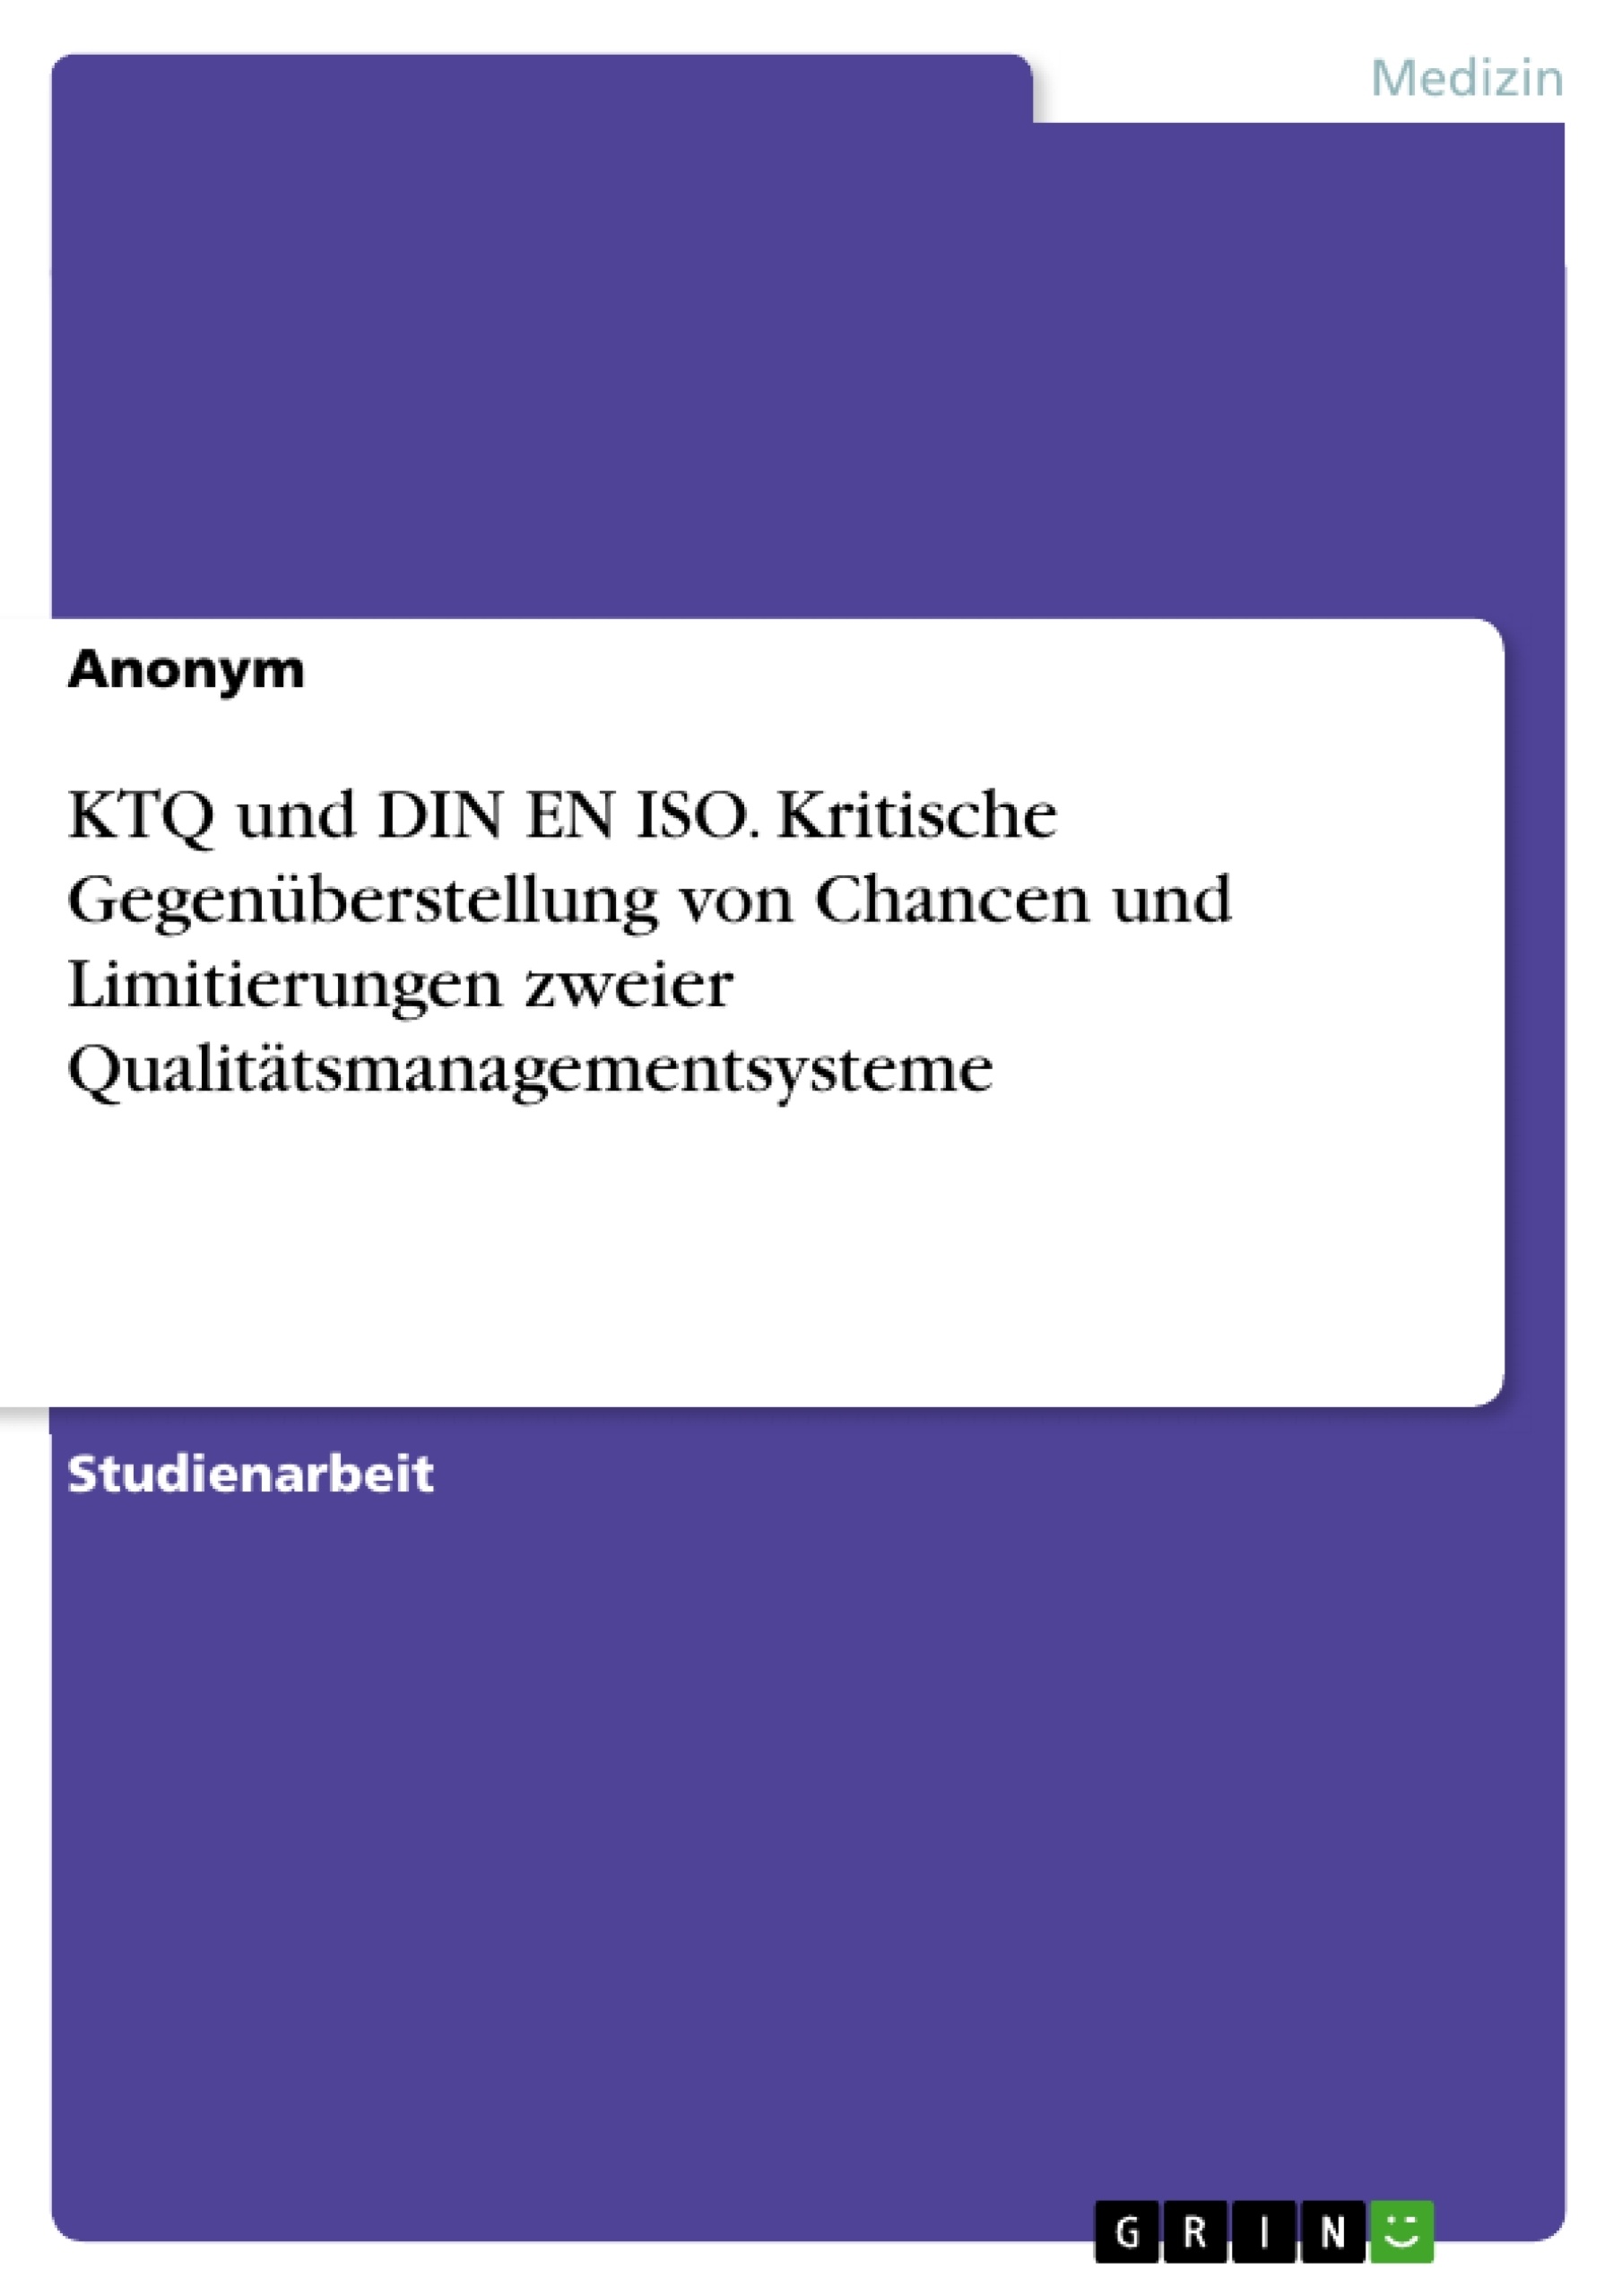 Title: KTQ und DIN EN ISO. Kritische Gegenüberstellung von Chancen und Limitierungen zweier Qualitätsmanagementsysteme